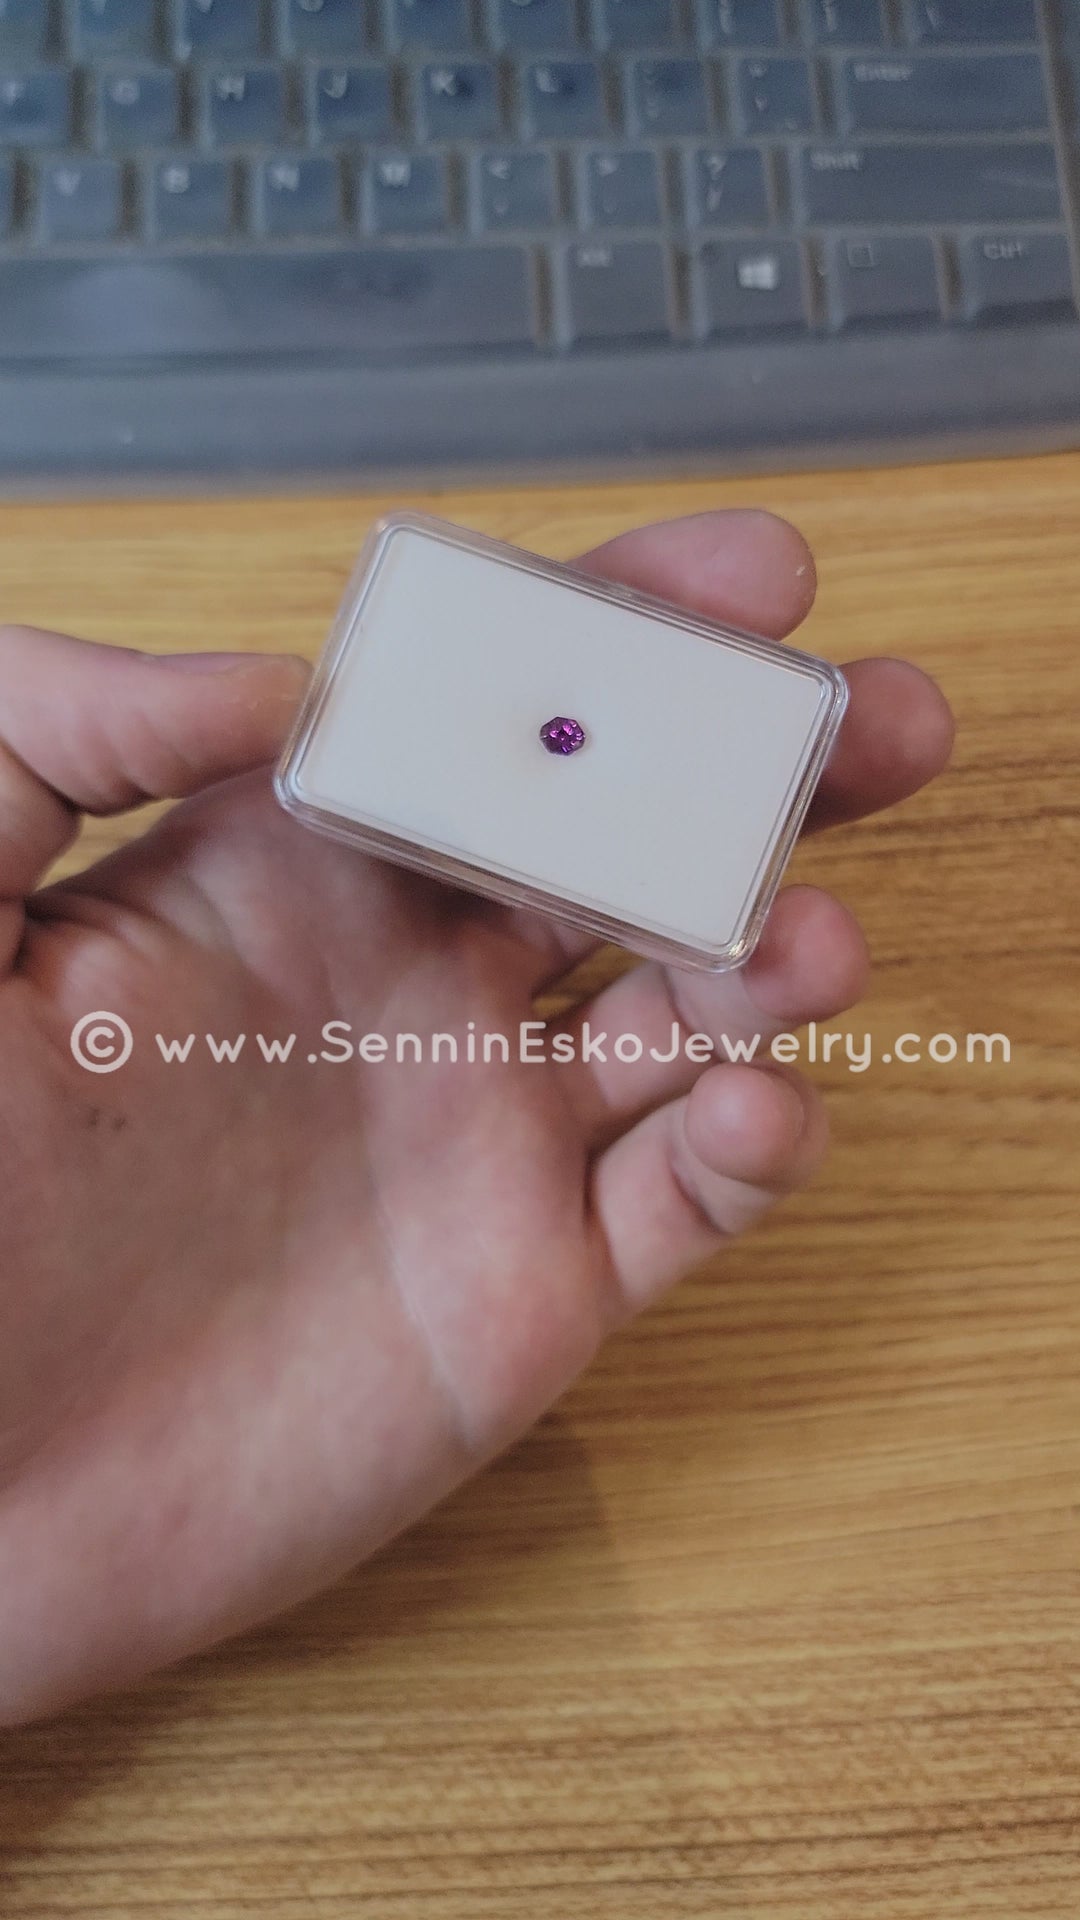 Octogone de fantaisie en saphir violet électrique de 0,51 carat - 5,1 x 4,2 mm, taille fantaisie